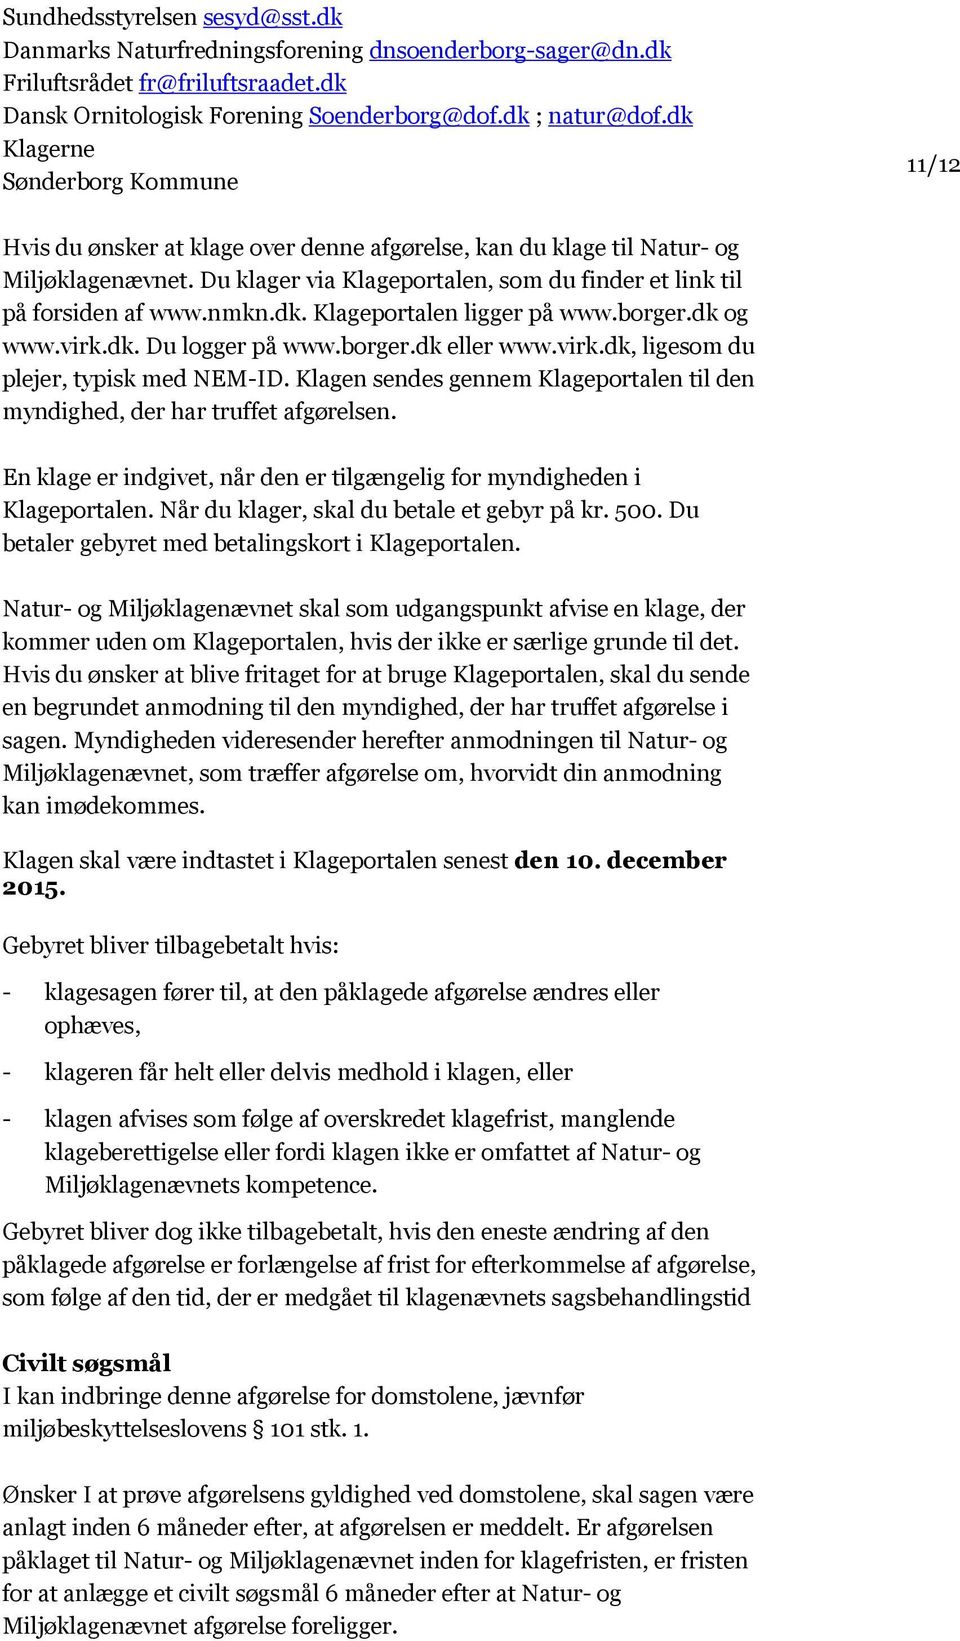 Du klager via Klageportalen, som du finder et link til på forsiden af www.nmkn.dk. Klageportalen ligger på www.borger.dk og www.virk.dk. Du logger på www.borger.dk eller www.virk.dk, ligesom du plejer, typisk med NEM-ID.